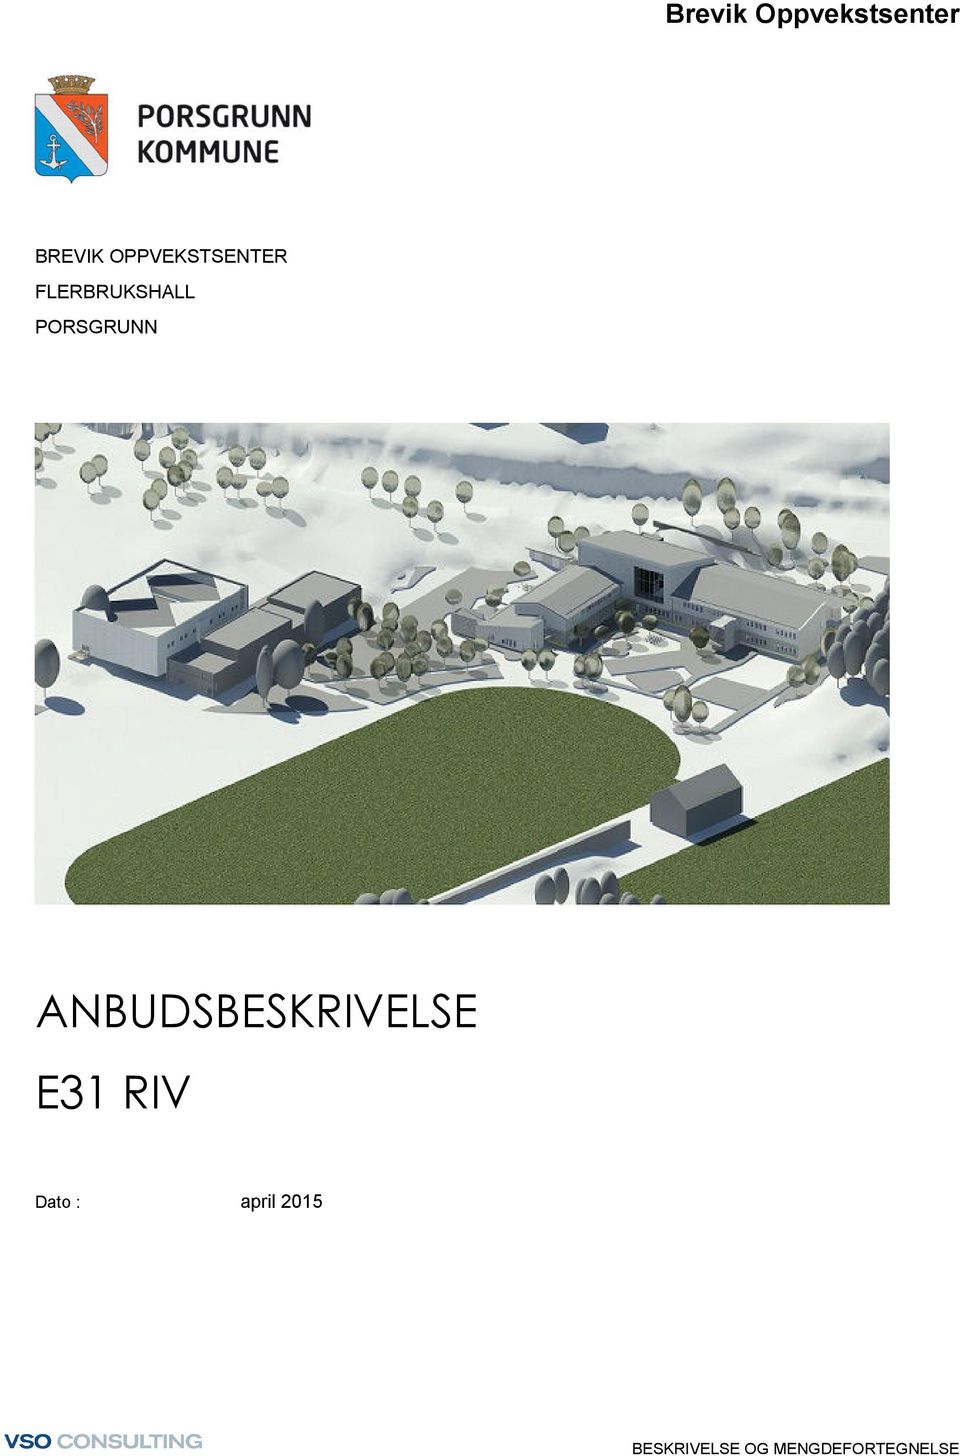 PORSGRUNN ANBUDSBESKRIVELSE E31 RIV